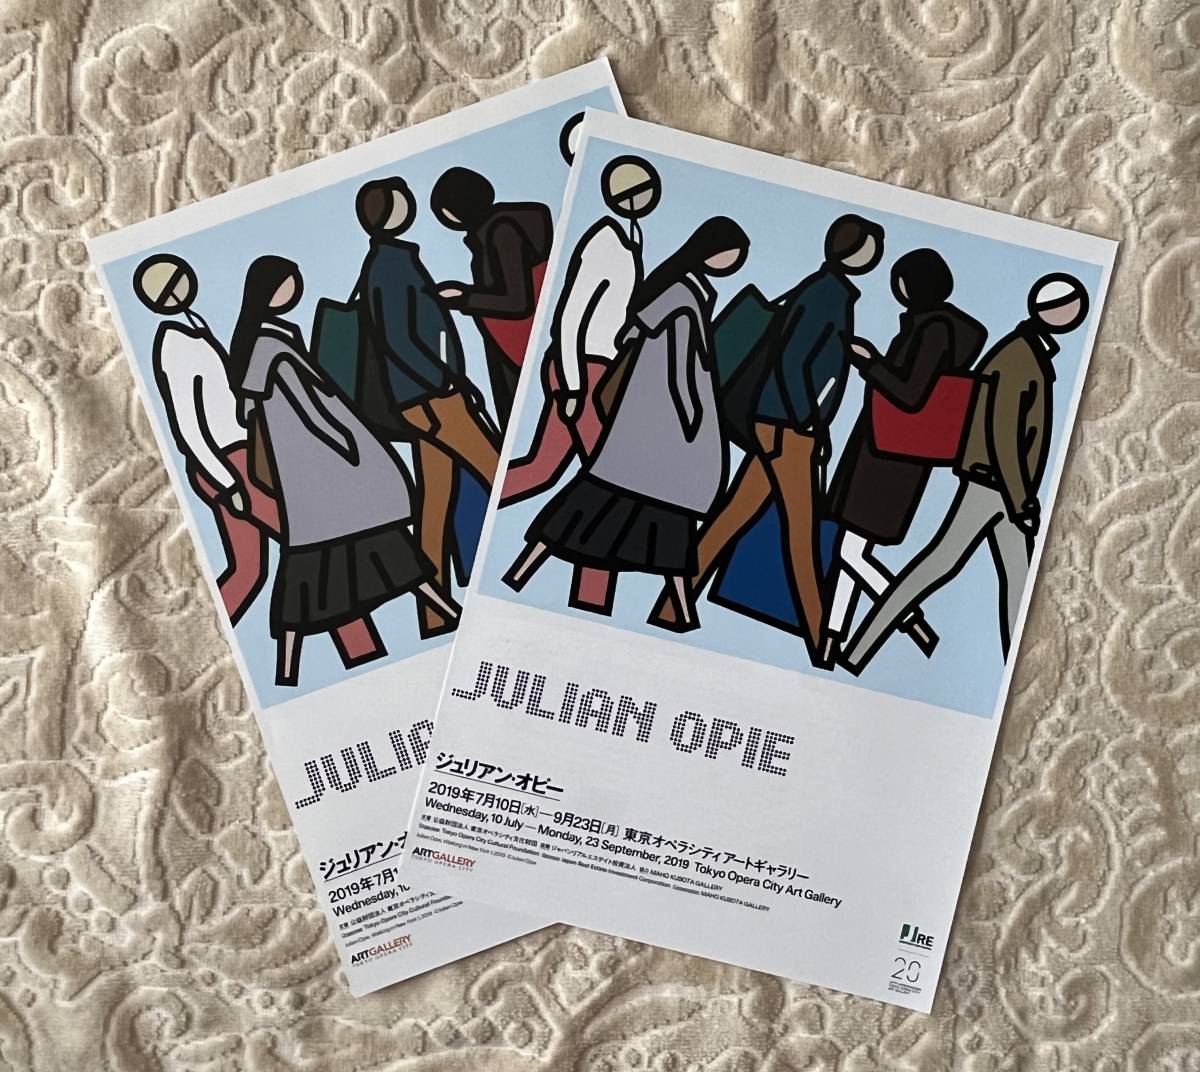 ジュリアン・オピー JULIAN OPIE＠東京オペラシティ アートギャラリー 2019/7/10 - 9/23 チラシ2枚セット _画像1